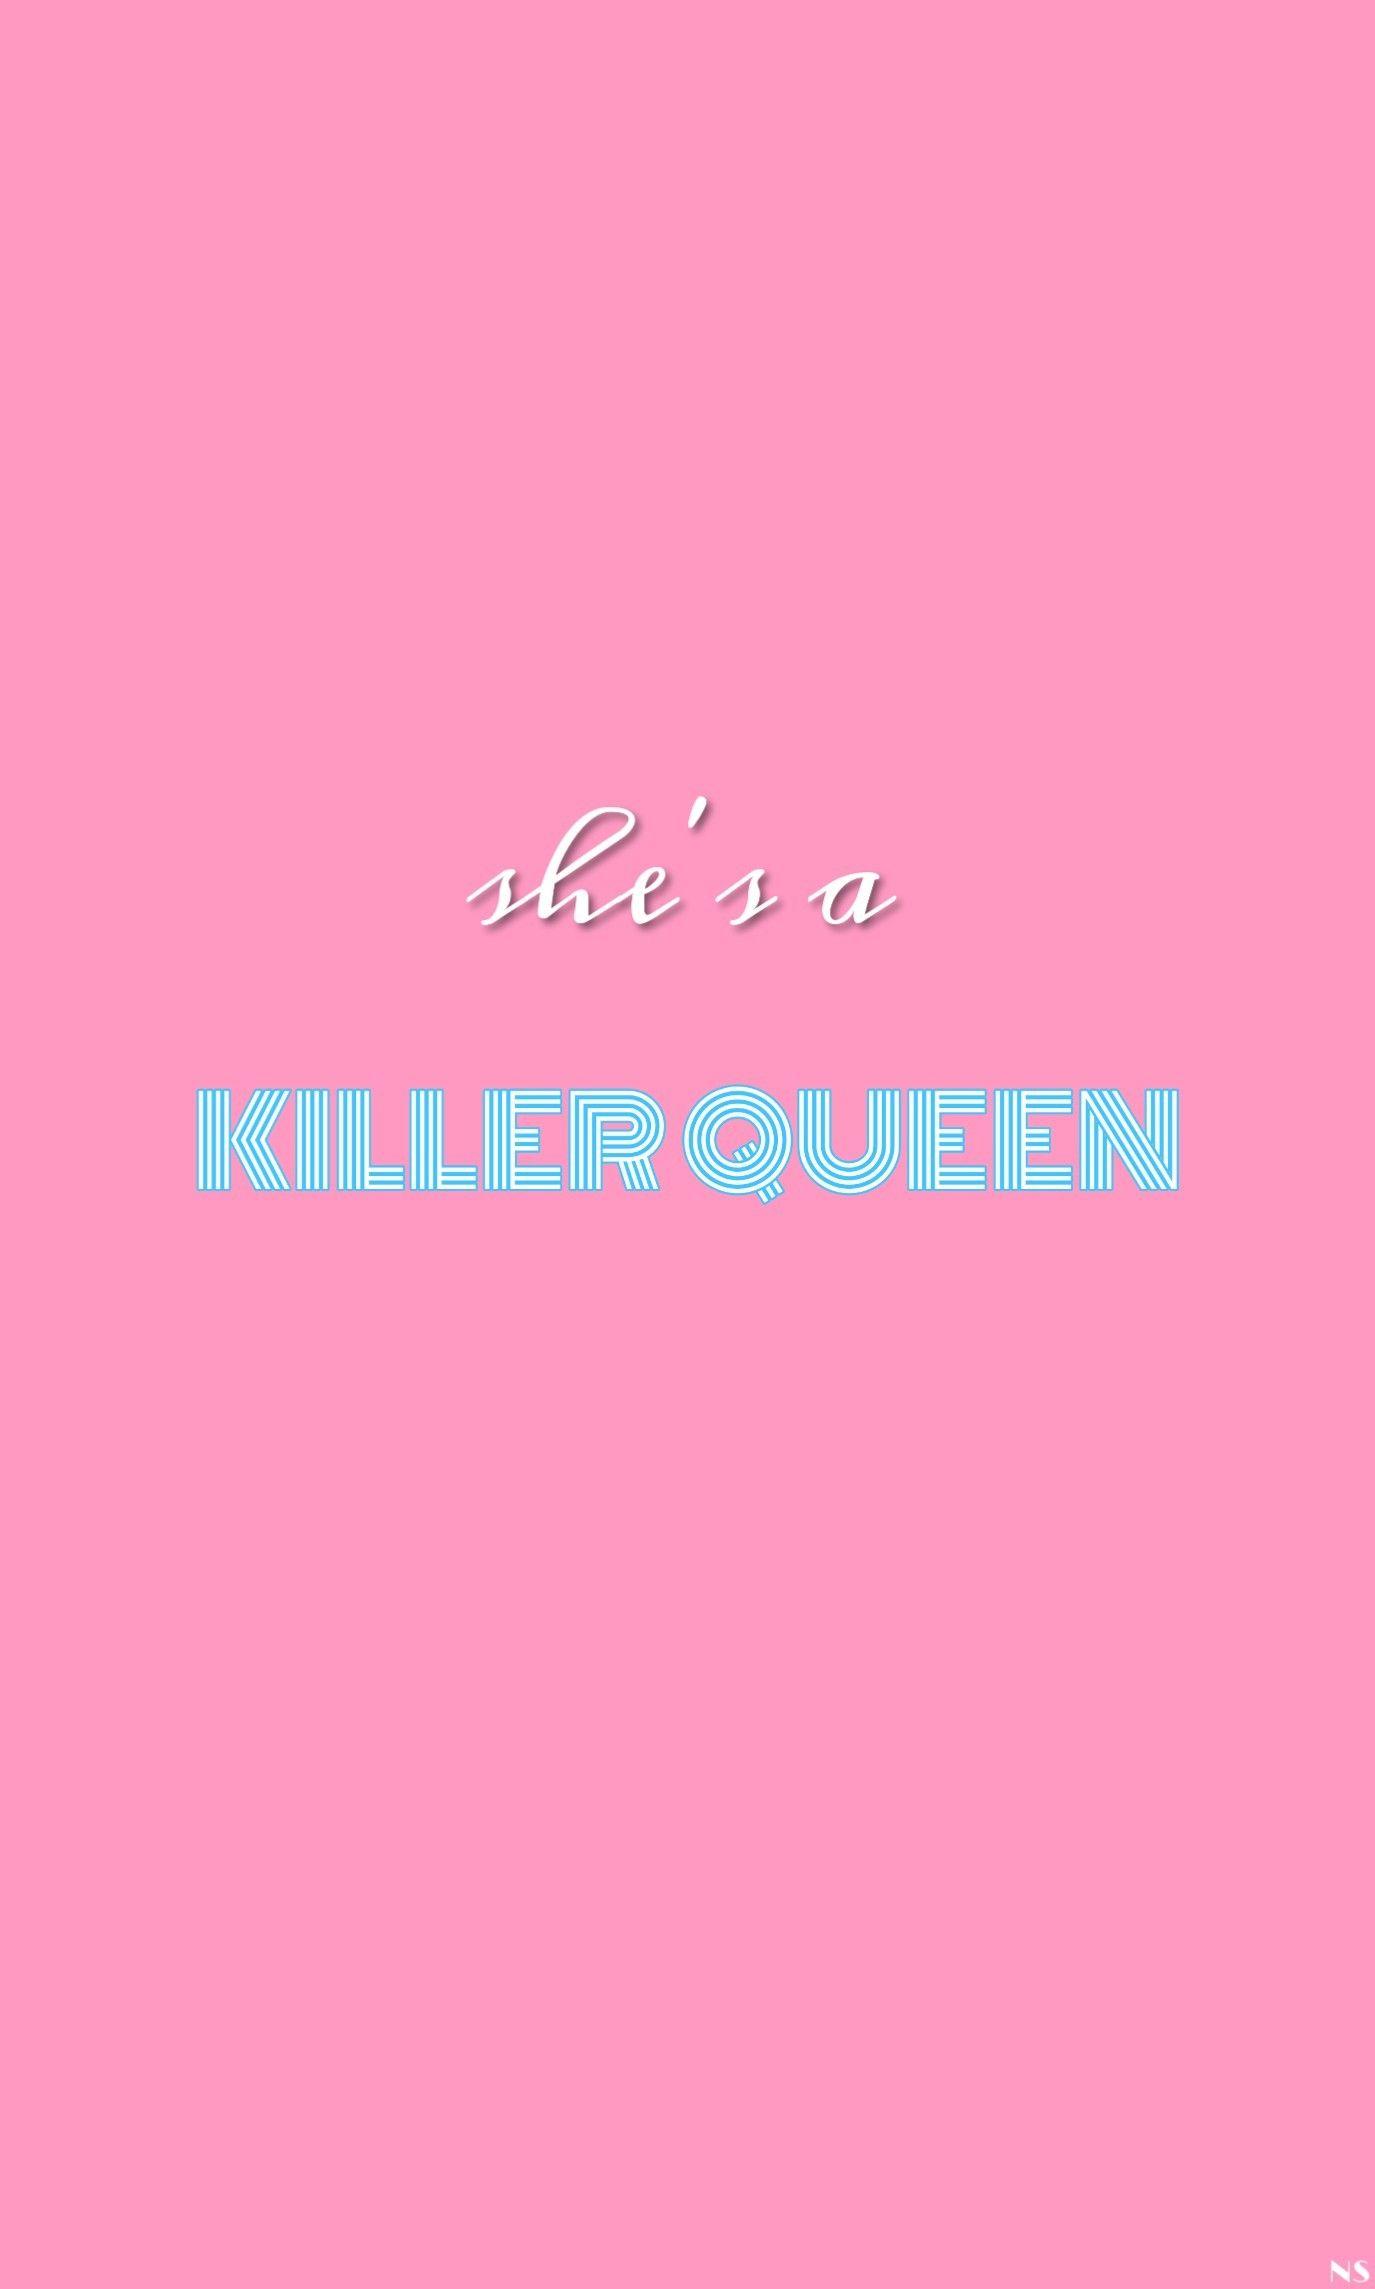 Killer queen wallpaper pink aesthetic. Queen wallpaper. Queens